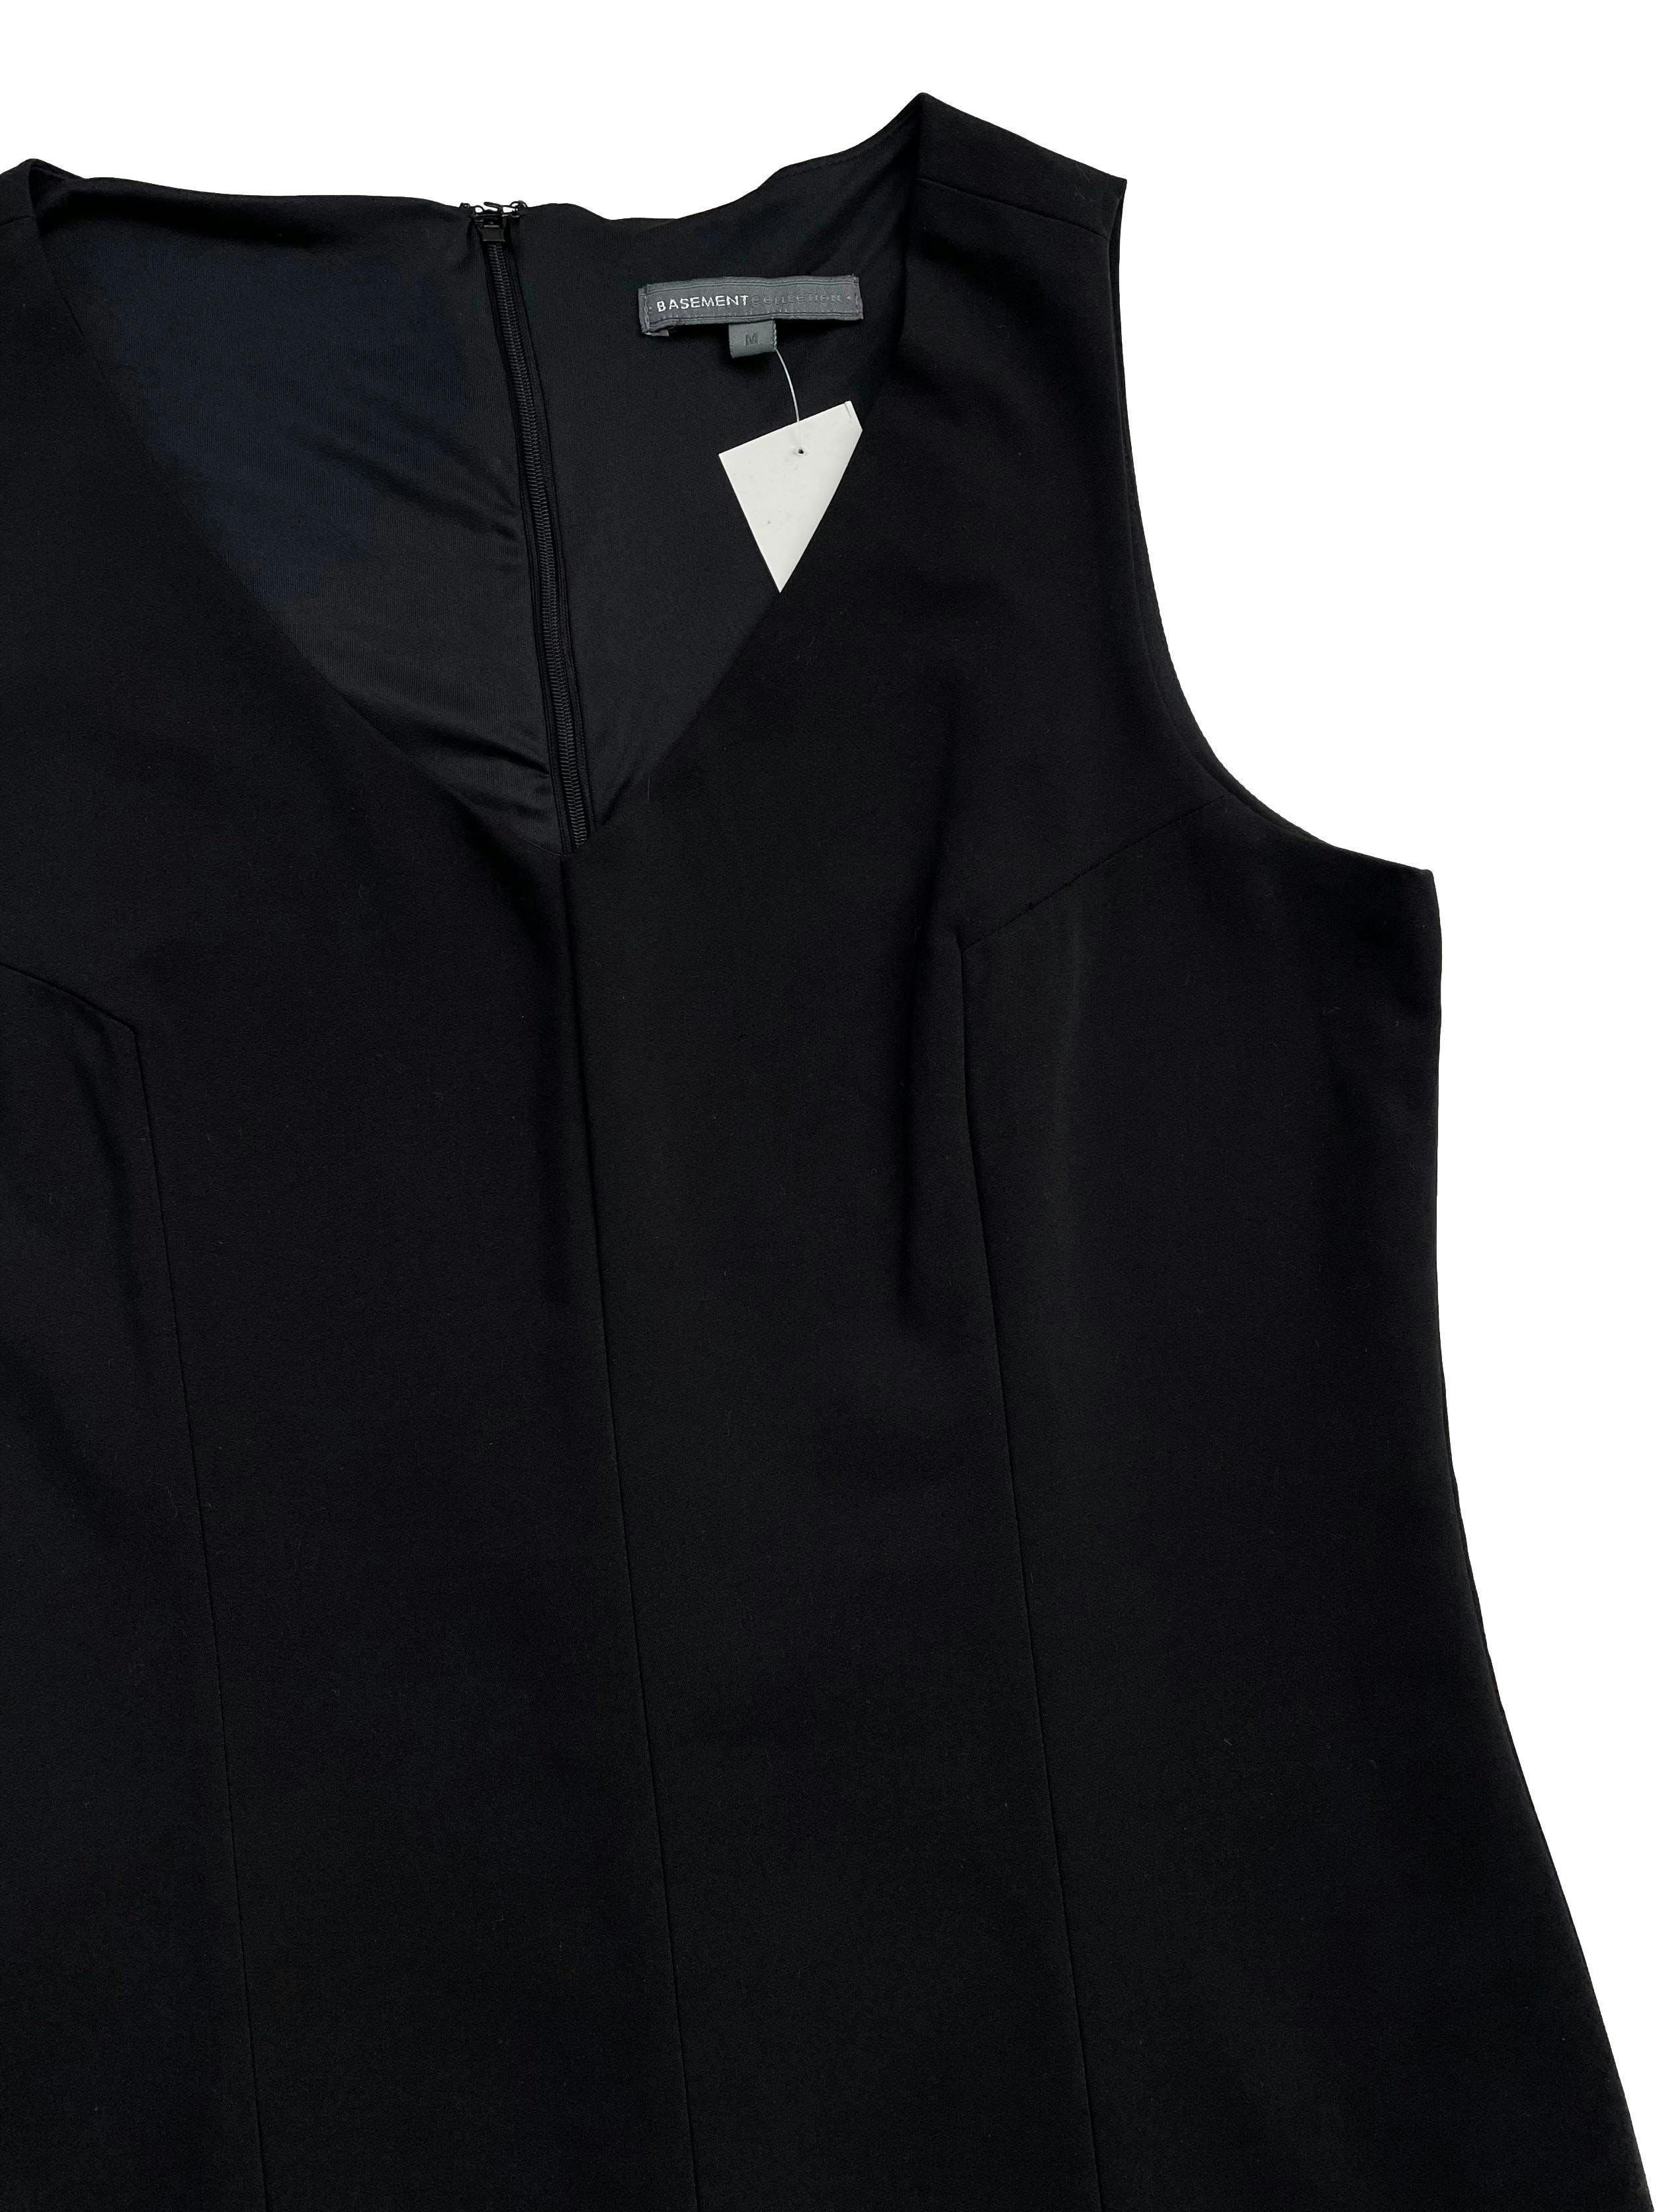 Vestido formal Basement negro, forrado, cuello V y cierre en la espalda. Busto 100cm, Largo 85cm.